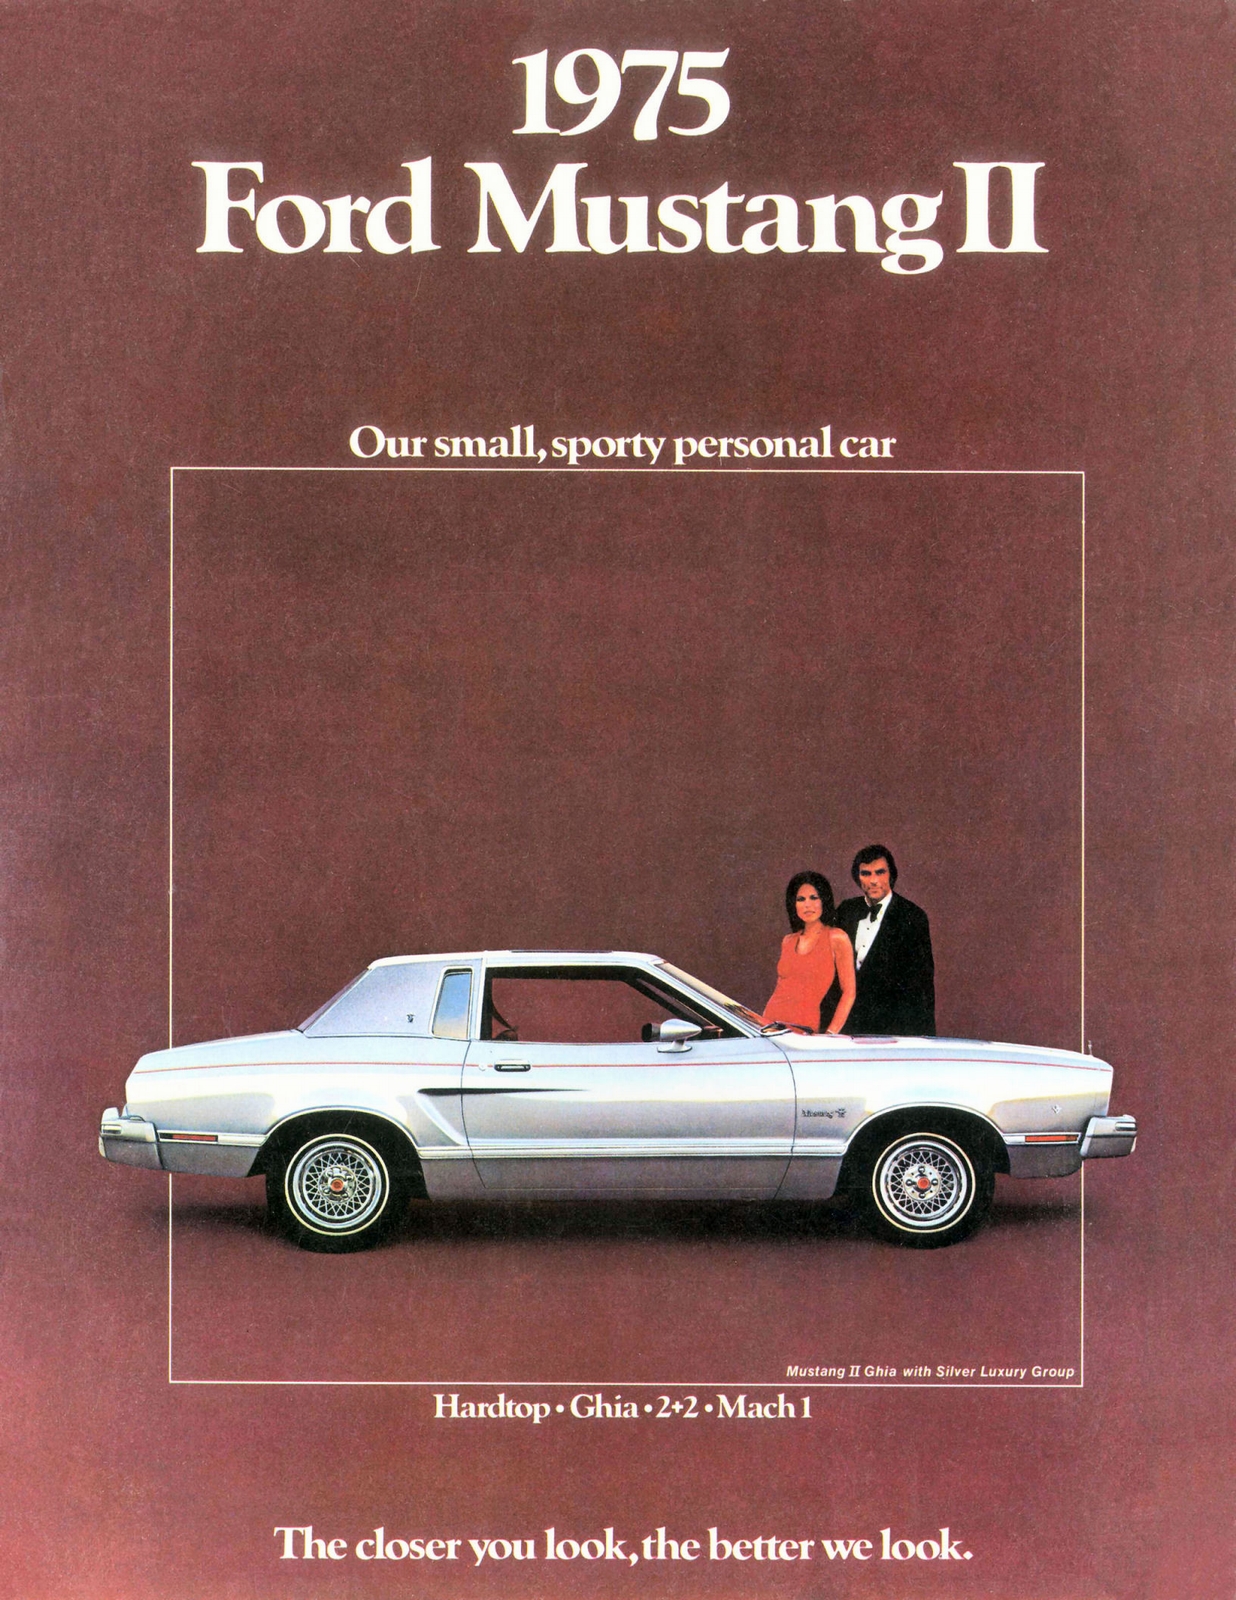 n_1975 Ford Mustang II-01.jpg